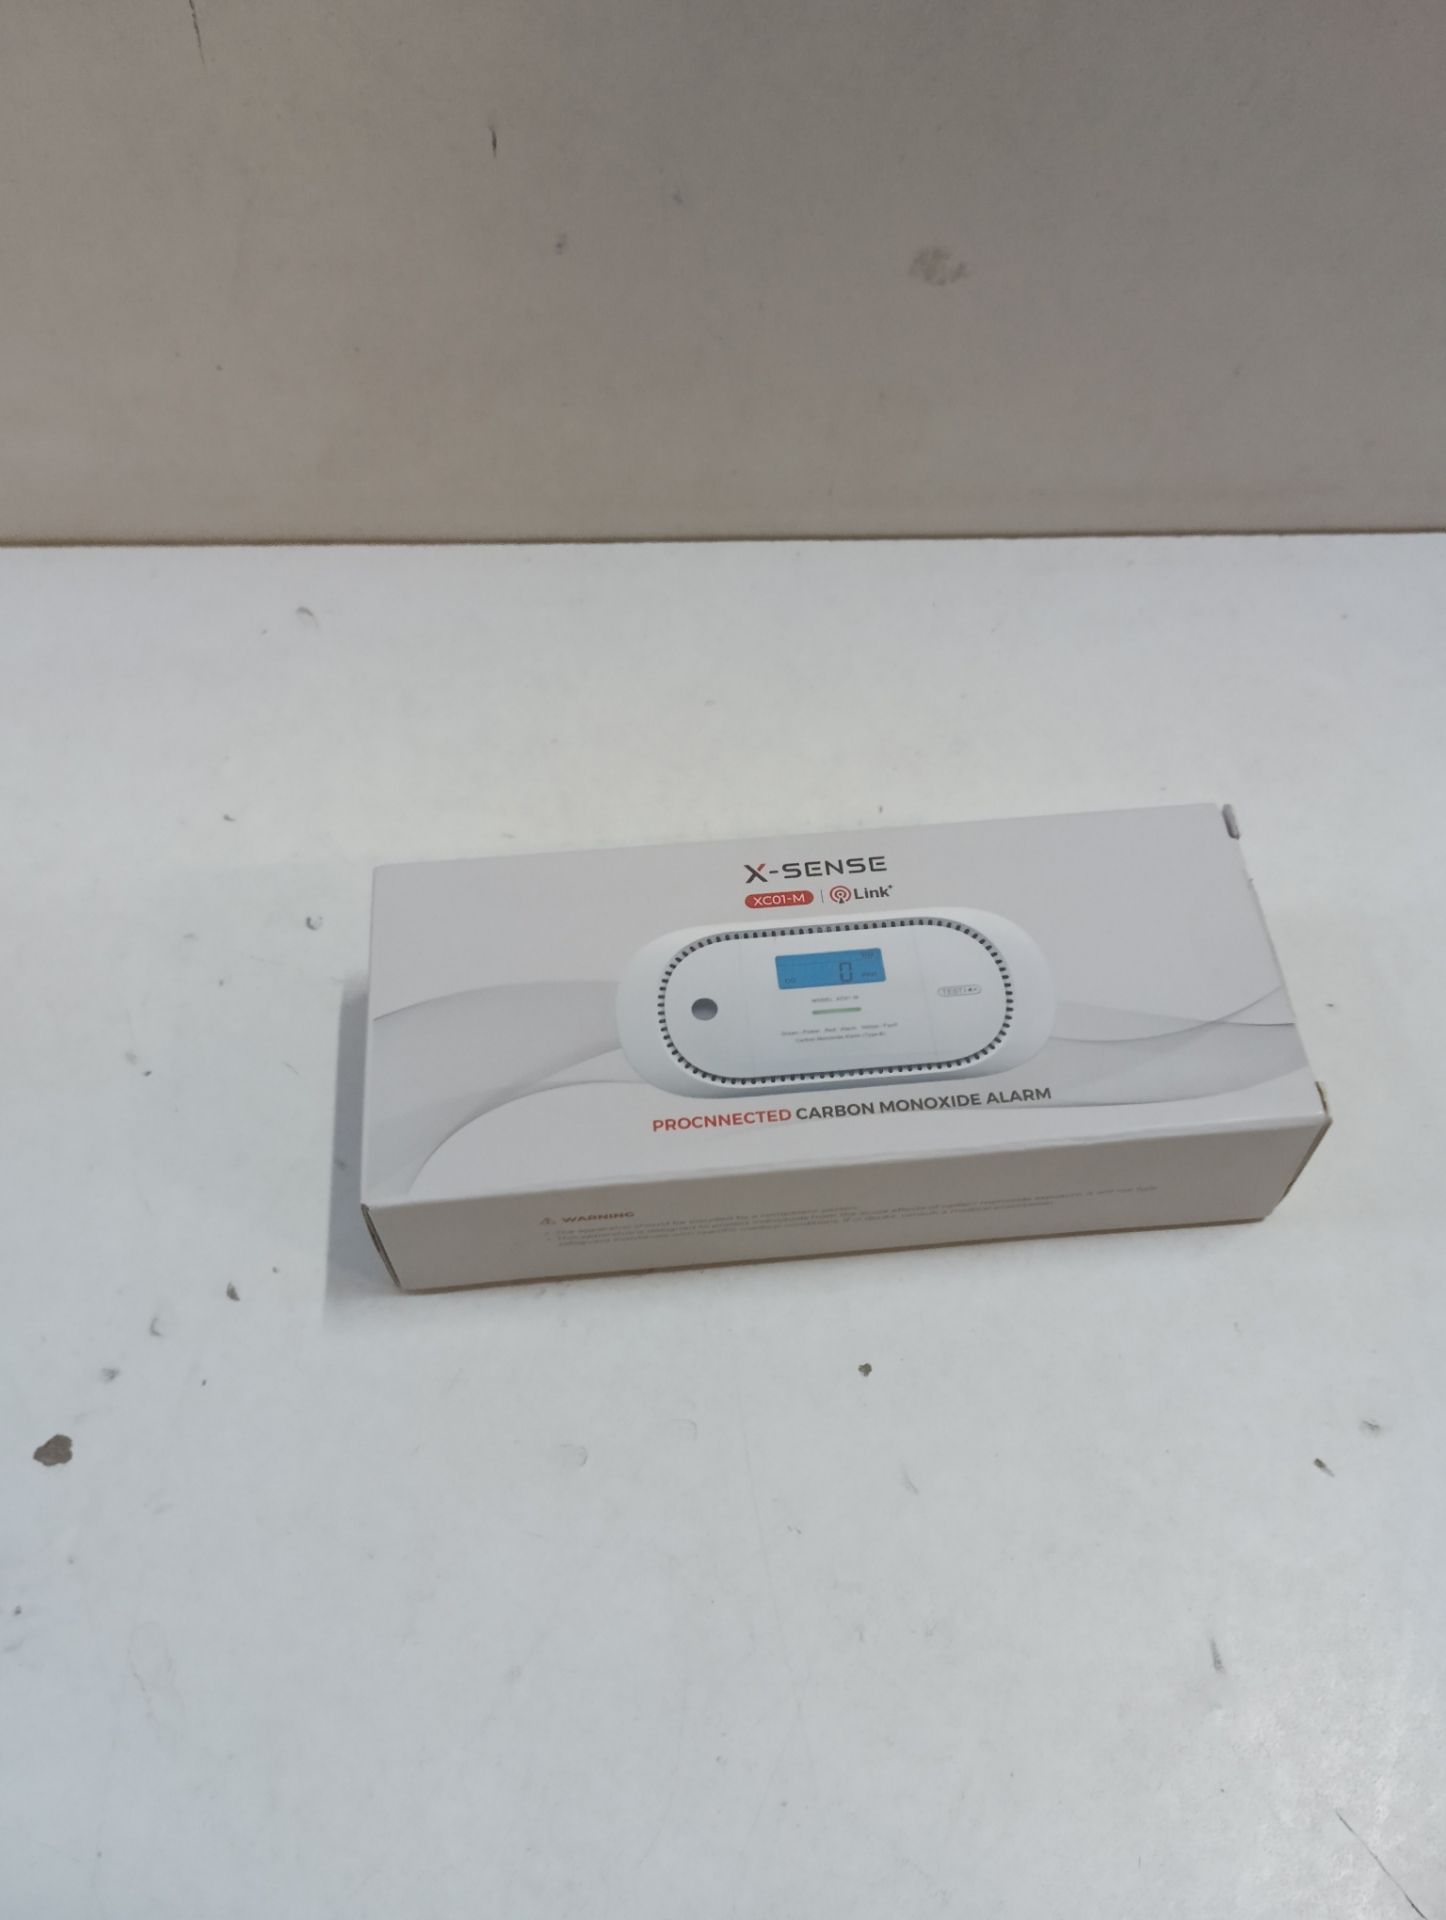 RRP £35.92 X-Sense Carbon Monoxide Alarm Requires Base Station SBS50 - Image 2 of 2